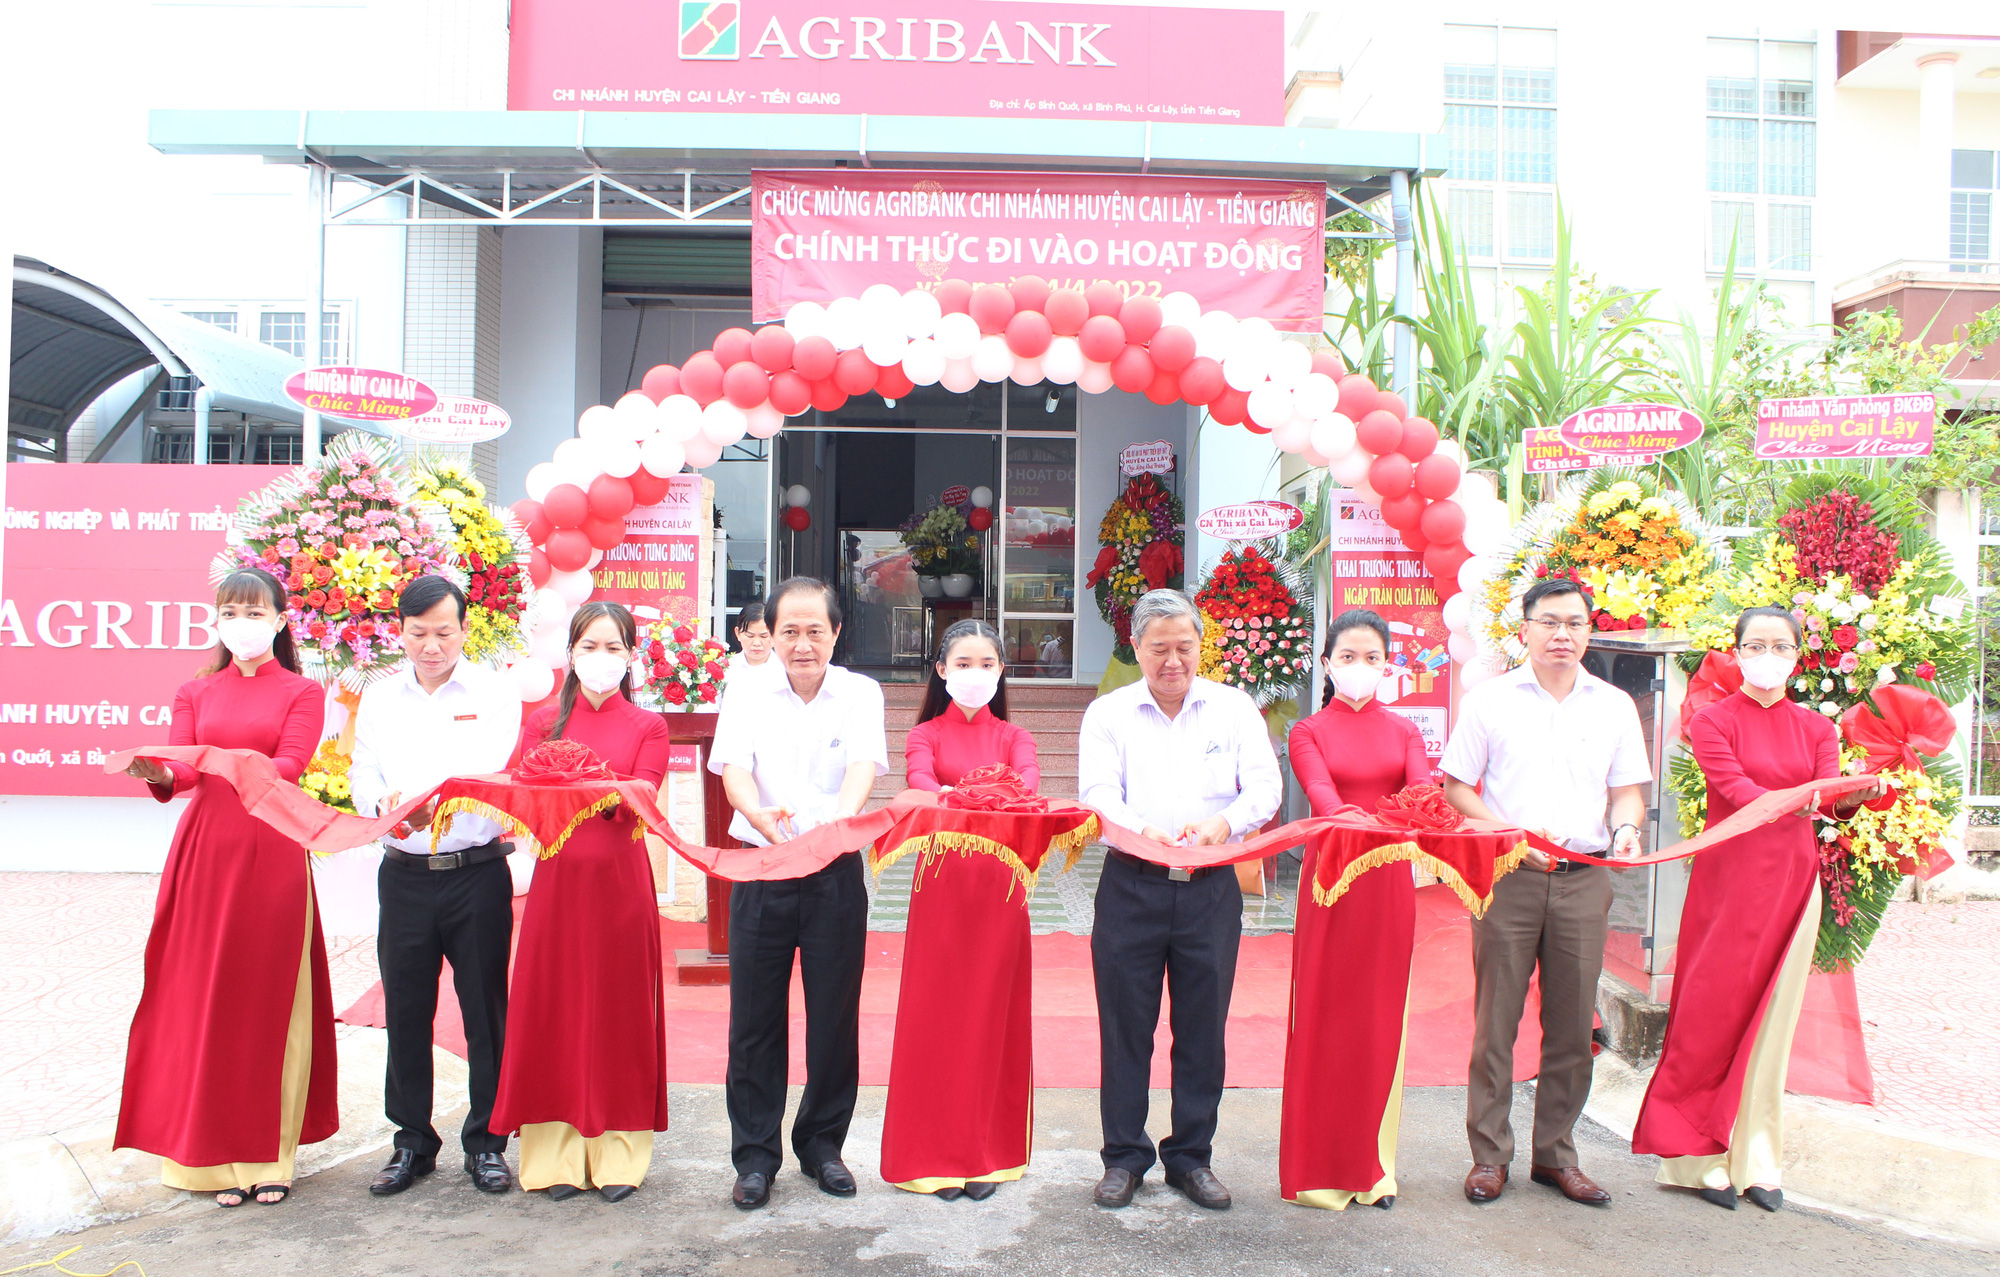 Agribank Tiền Giang khai trương chi nhánh huyện Cai Lậy - Ảnh 2.